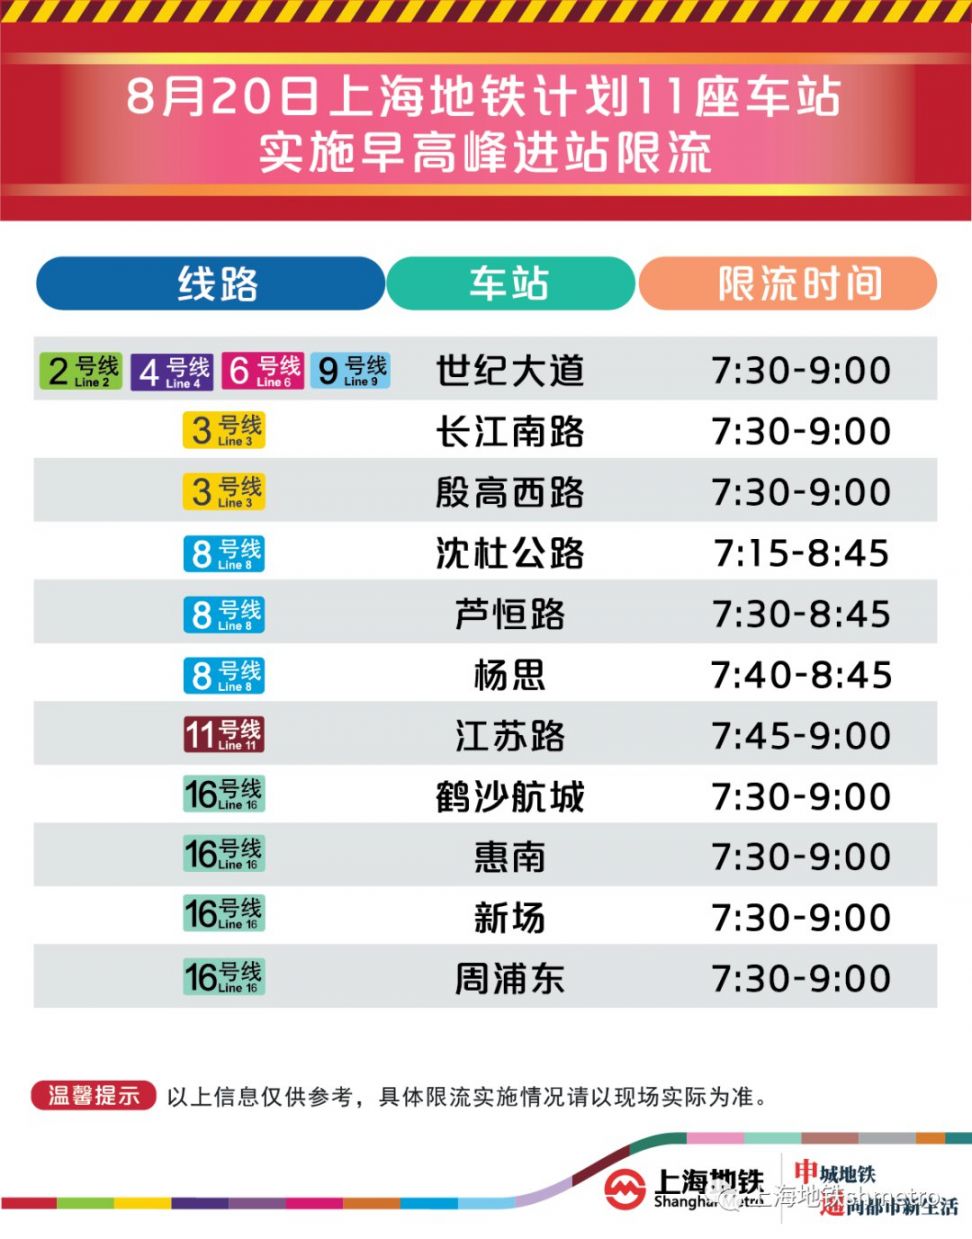 8月20日上海11座地铁站早高峰限流(附舒适度预告)